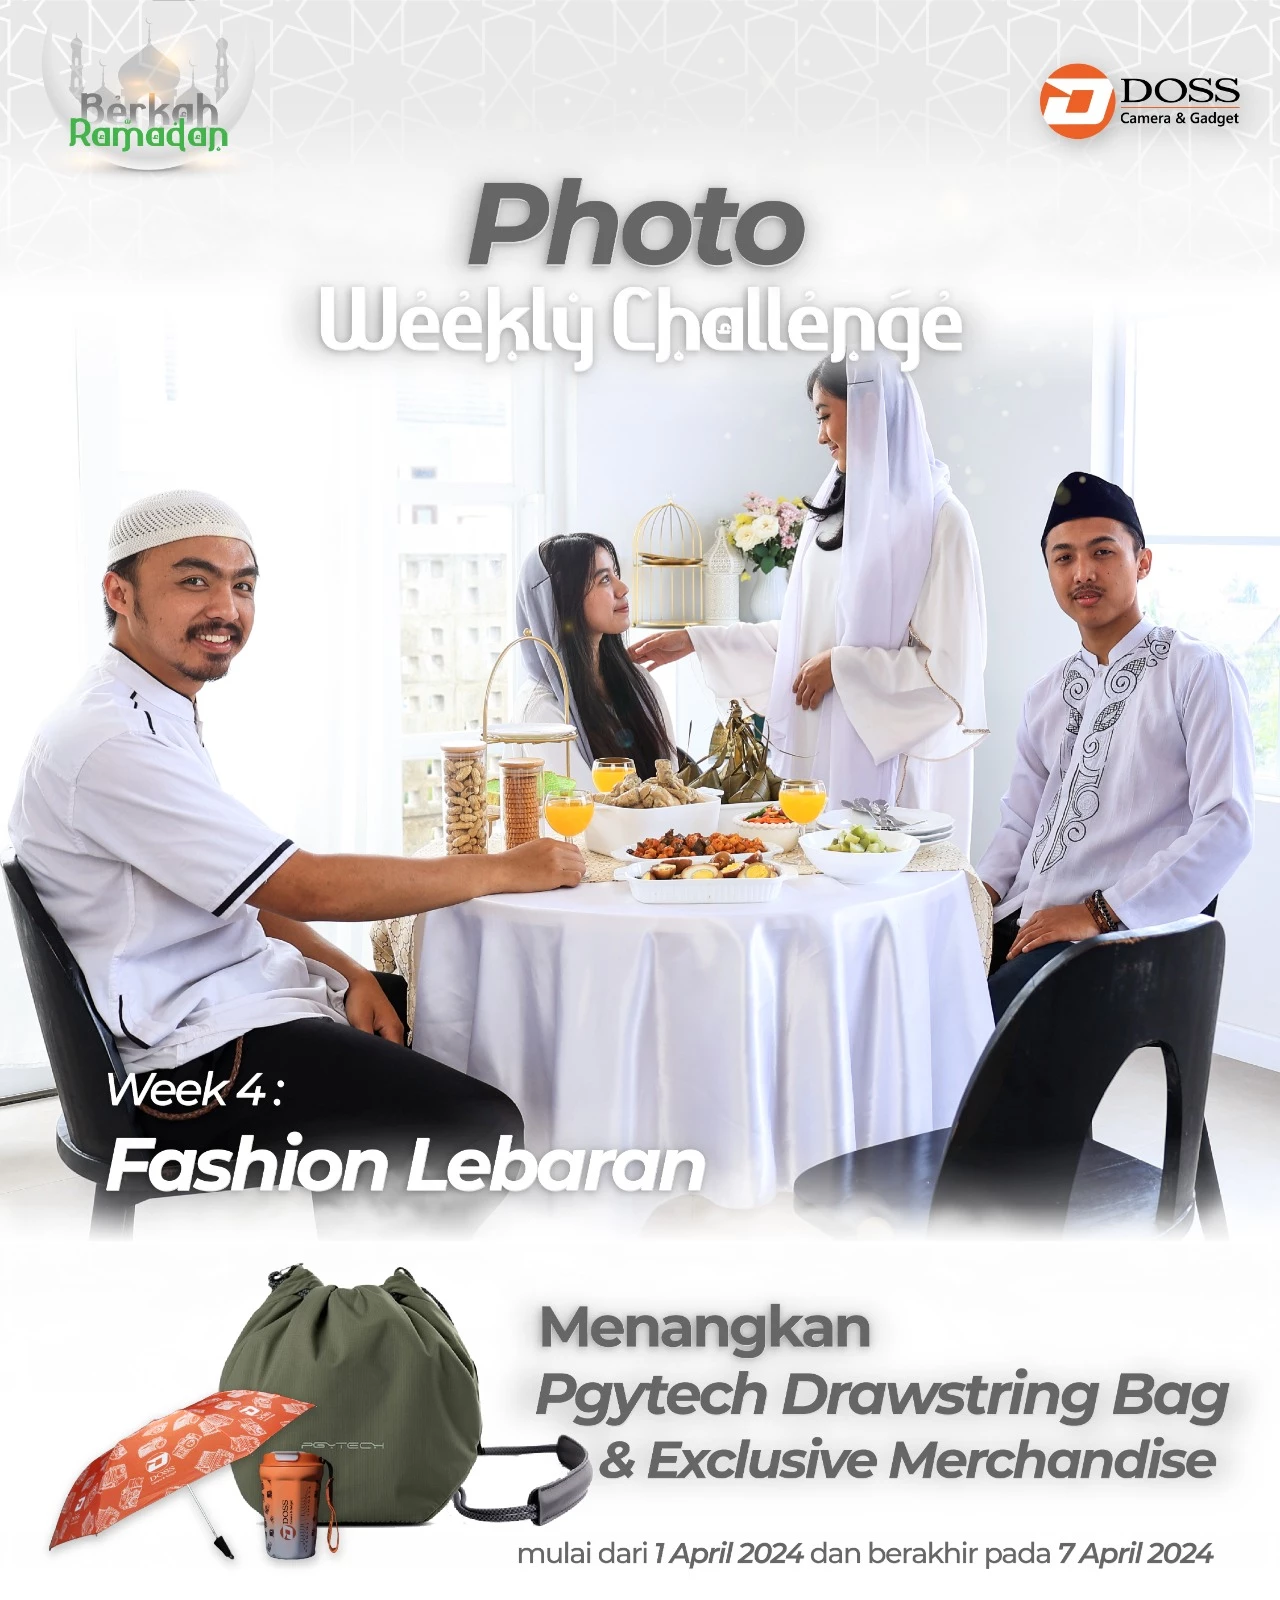 Ayo Ikutan Weekly Photo Competition Challenge Week 4 tema "Fashion Lebaran" dan Menangkan PGYTECH Drawstring Bag.